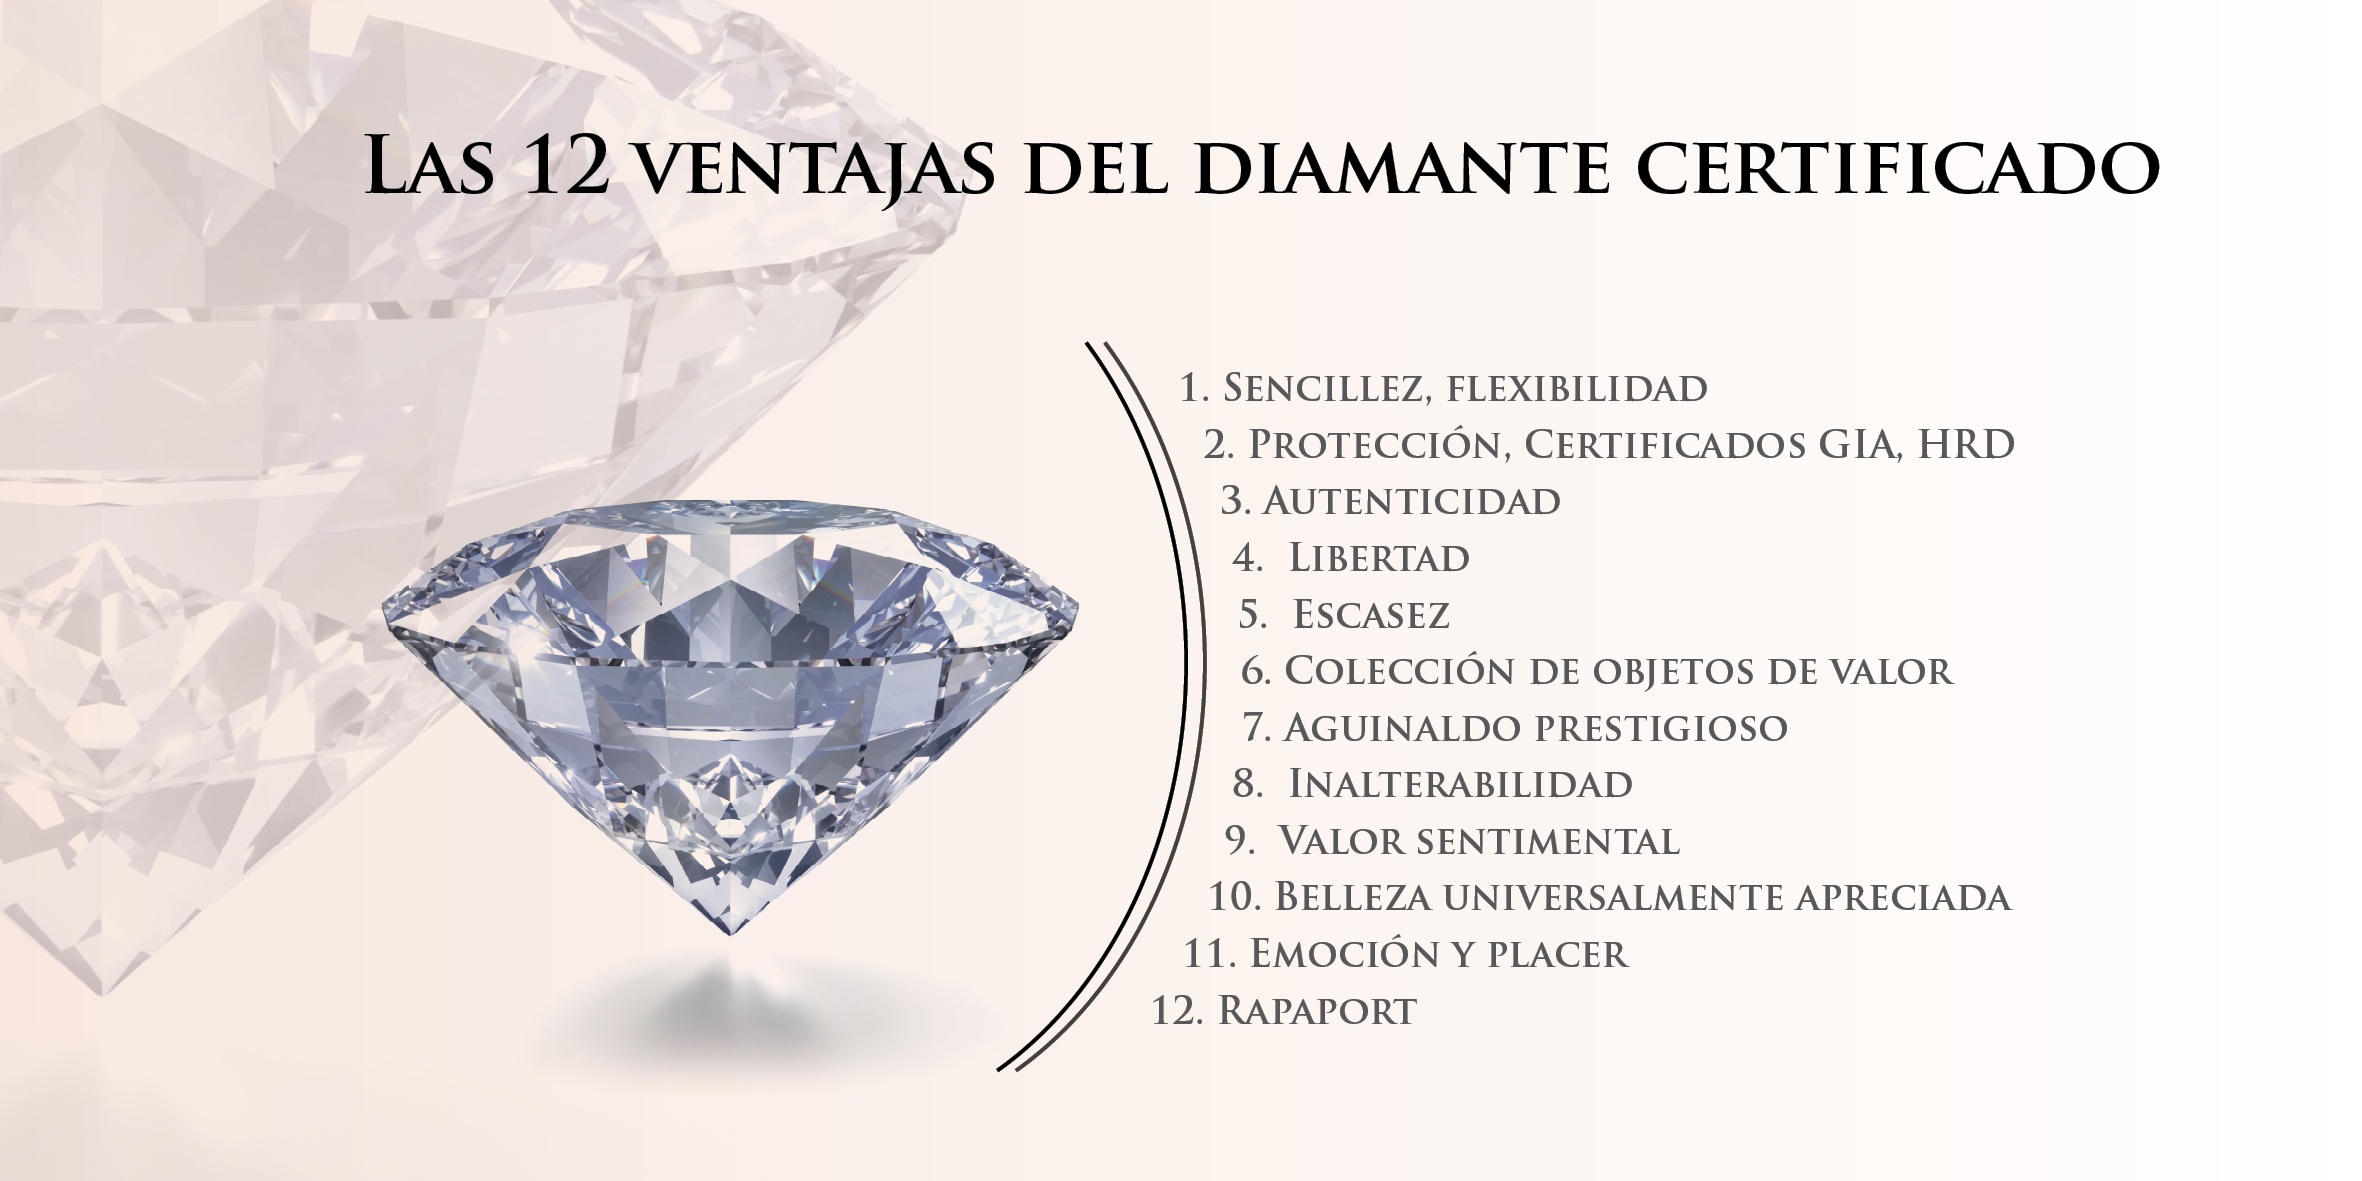 Contratación Ejercicio mañanero almacenamiento Las 12 ventajas del diamante certificado - Rexluxa